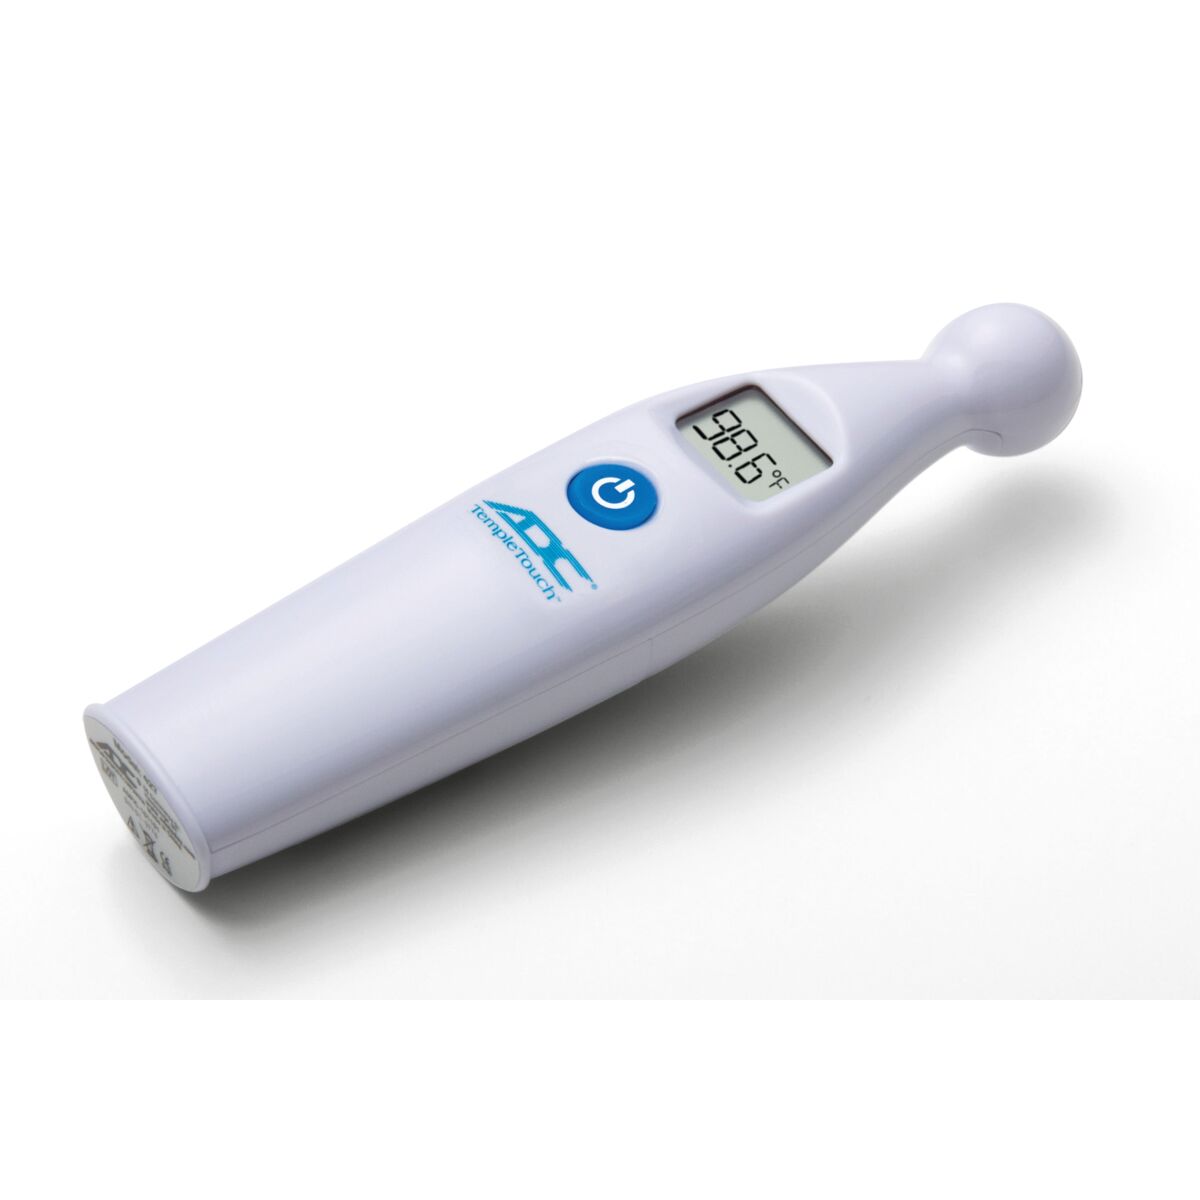 Thermomètre médical numérique temporal ADC Adtemp 427 - 1023688 - ADC - 427  - Thermomètre Médical - 3B Scientific